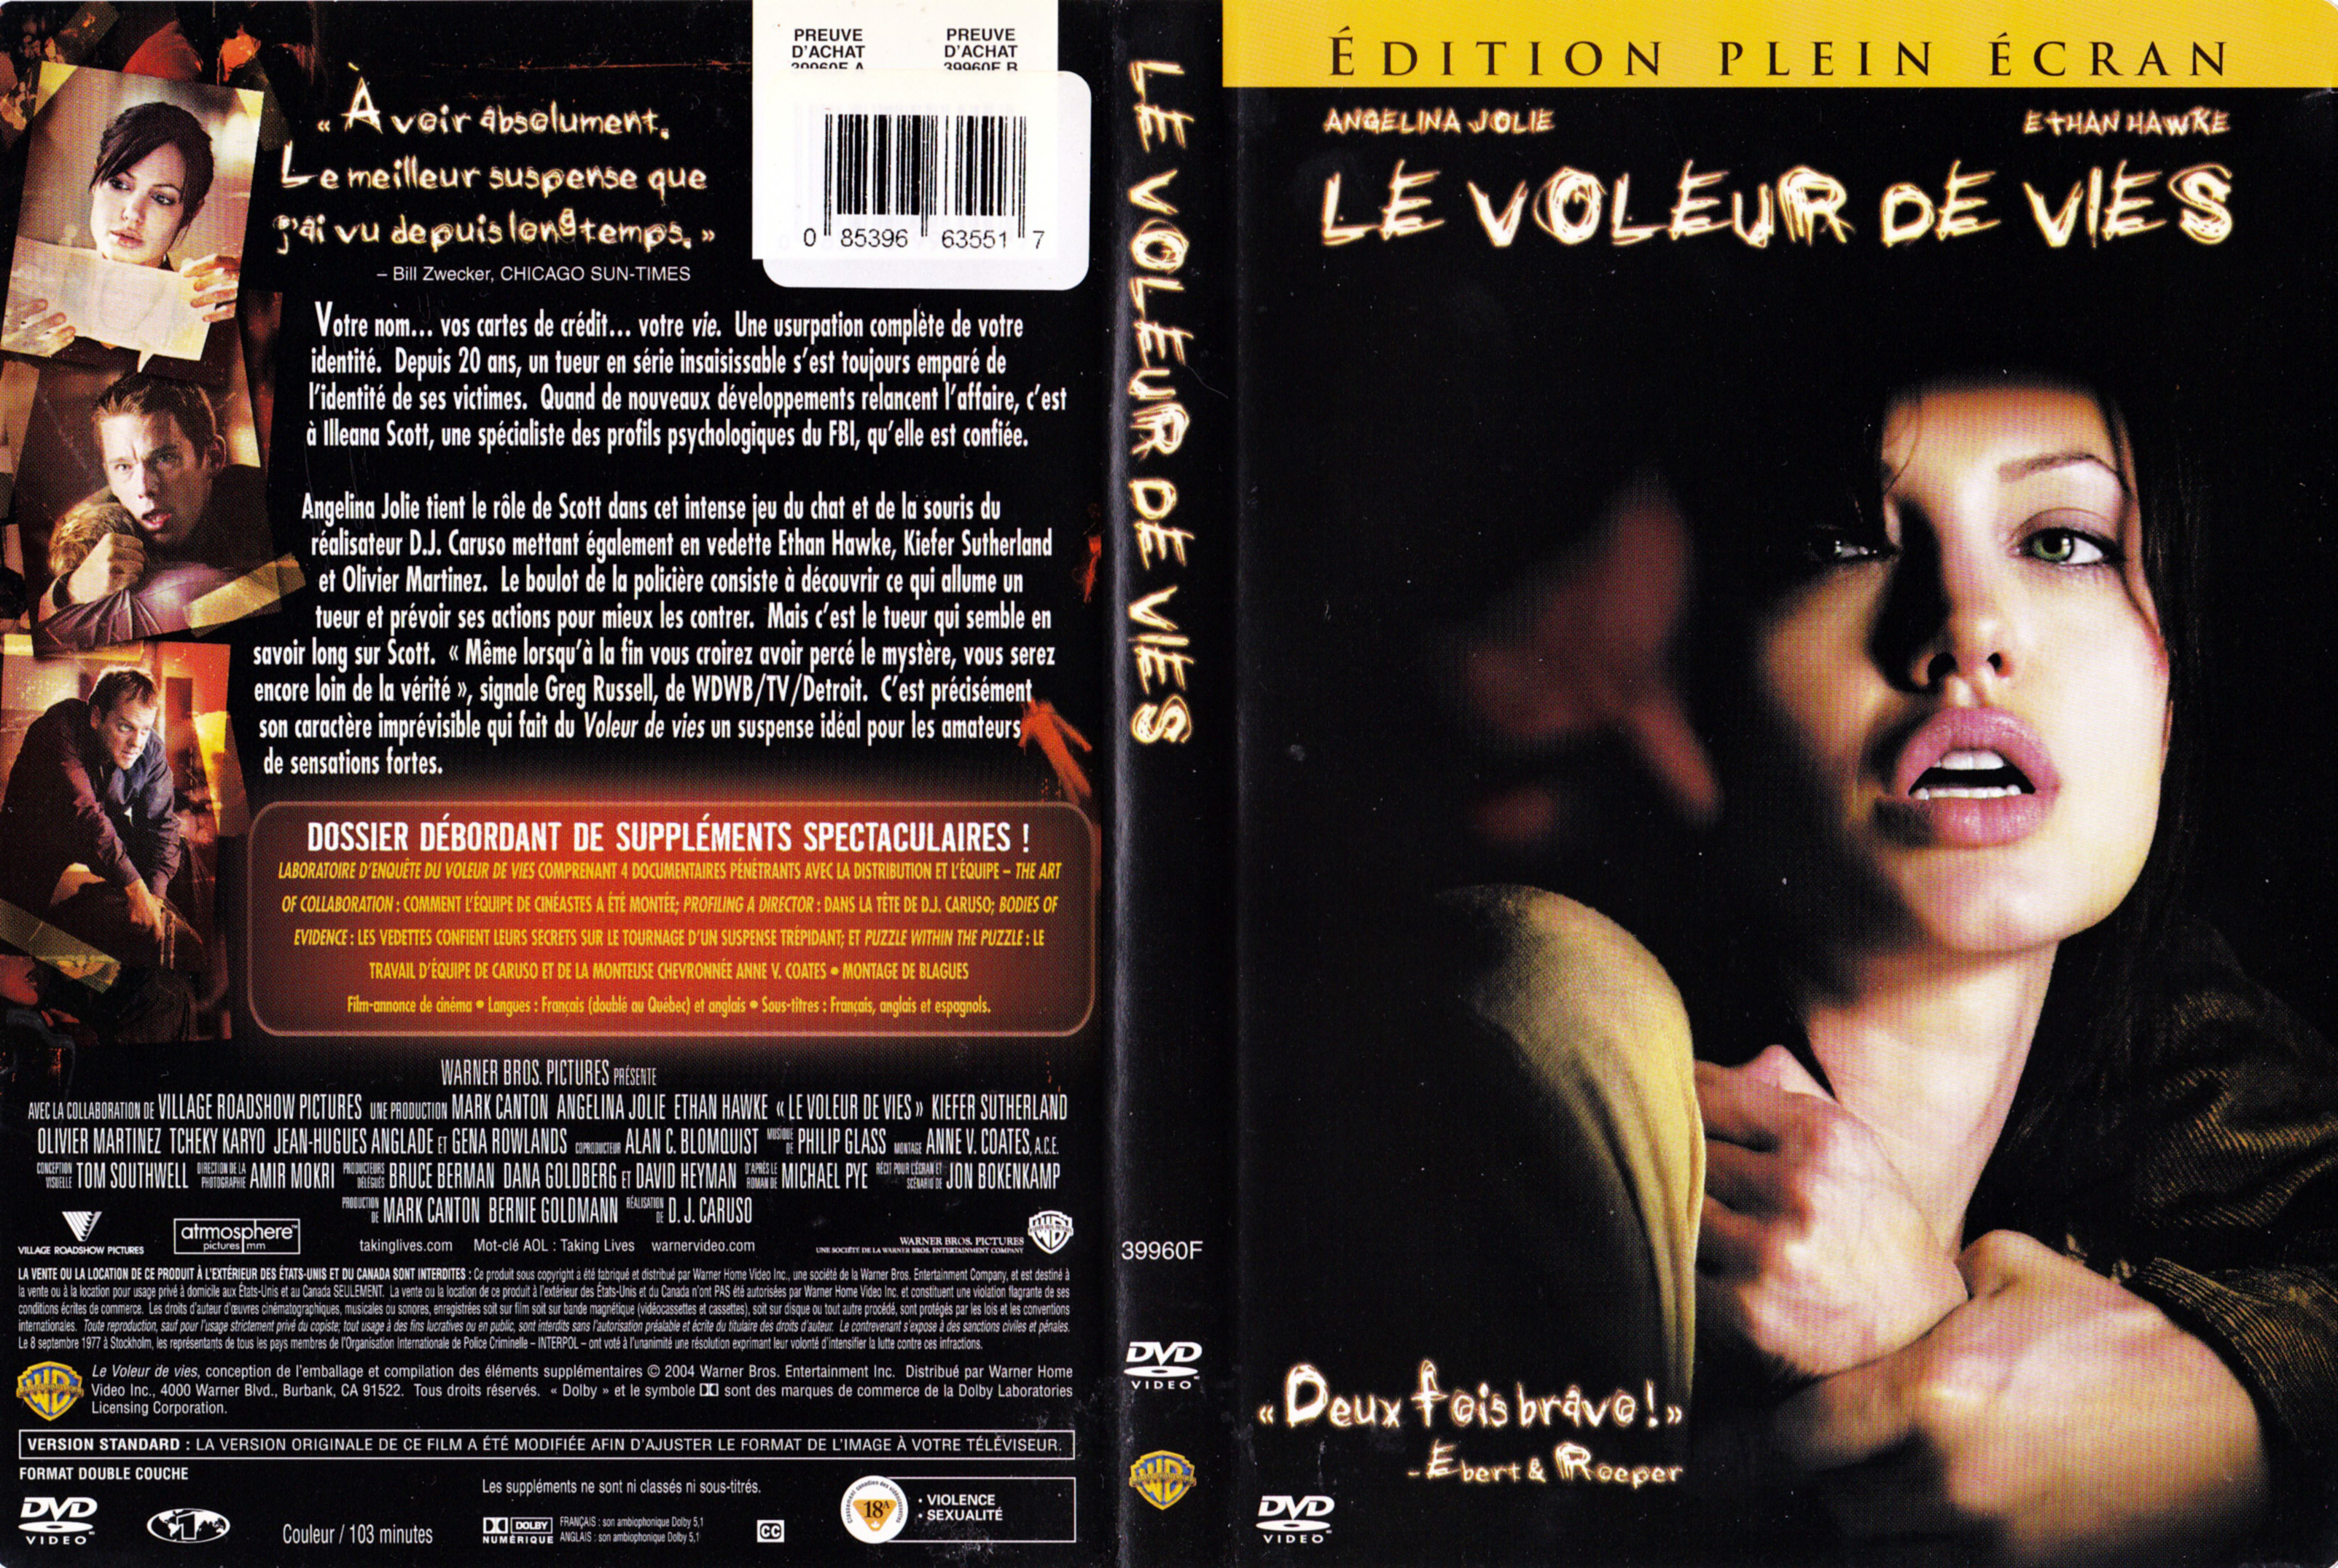 Jaquette DVD de Le voleur de vies (Canadienne)  Cinéma Passion